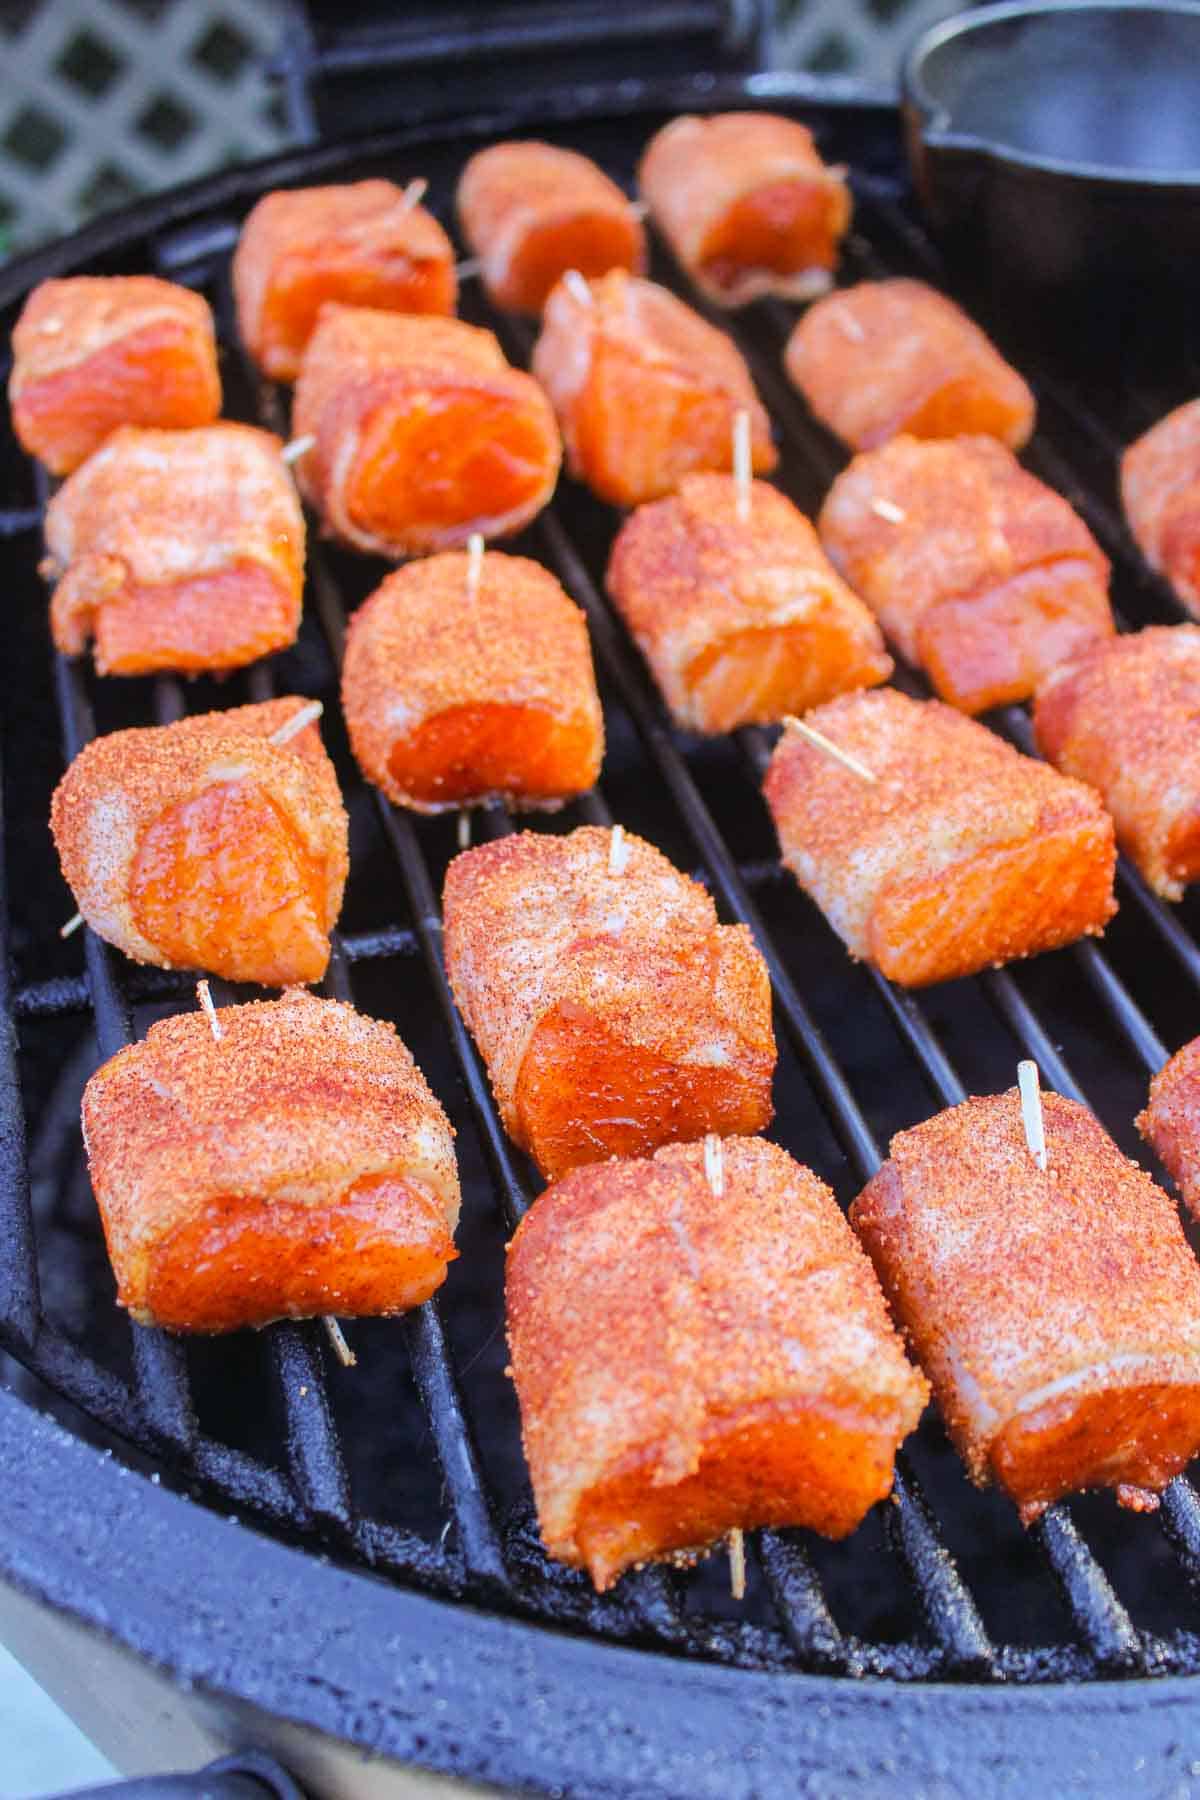 Bacon Wrapped Salmon Bites on the smoker